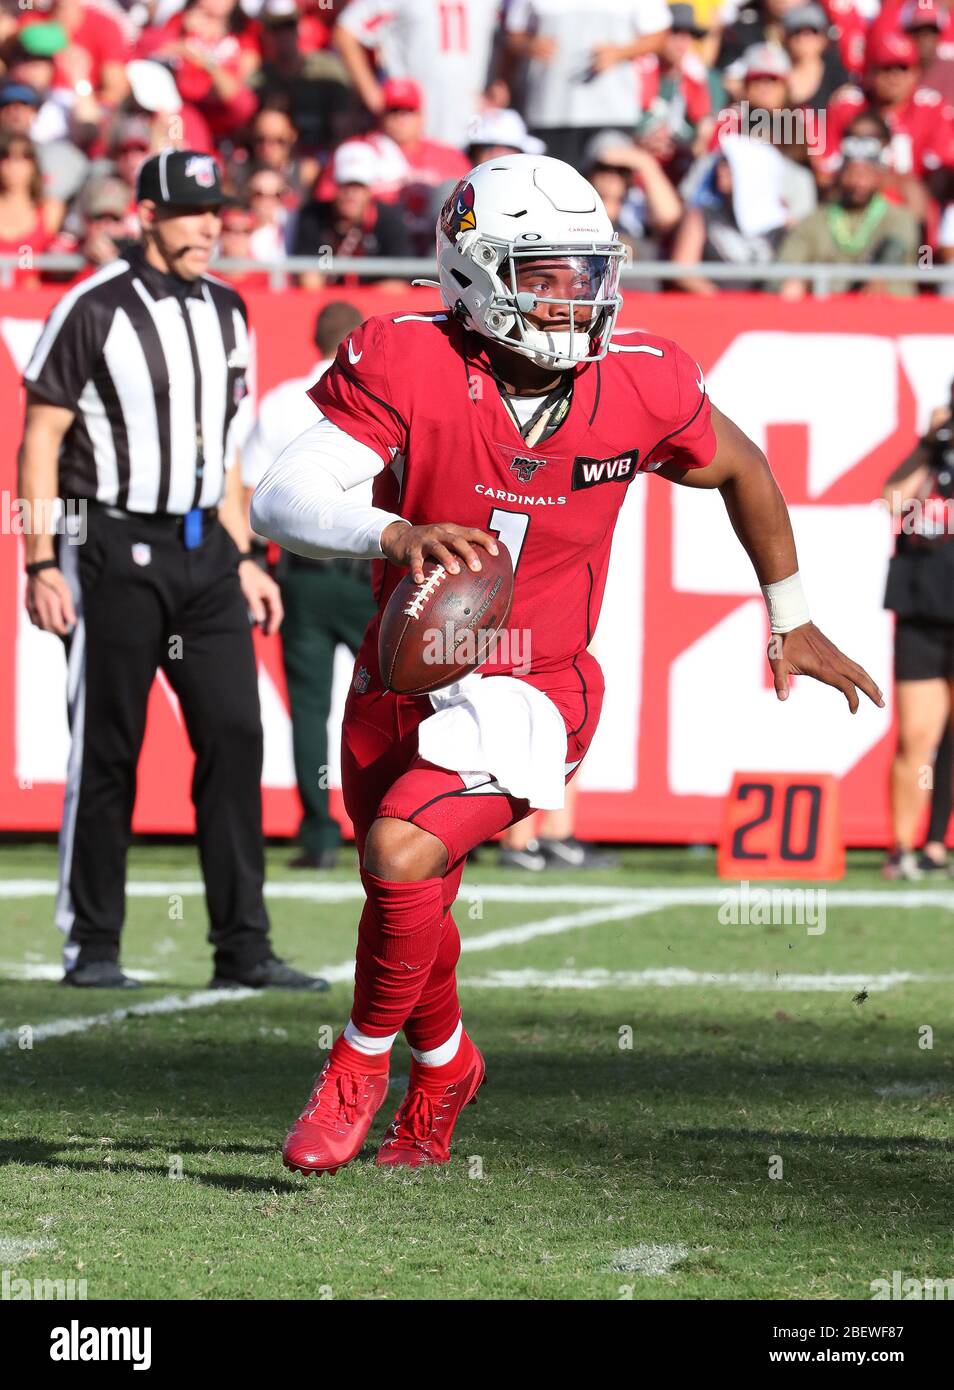 10 novembre 2019; Tampa, FL USA; quarterback dei Arizona Cardinals e primo picketto di sformo complessivo Kyler Murray (1) rotola fuori dalla tasca durante un gioco di NFL. Foto Stock